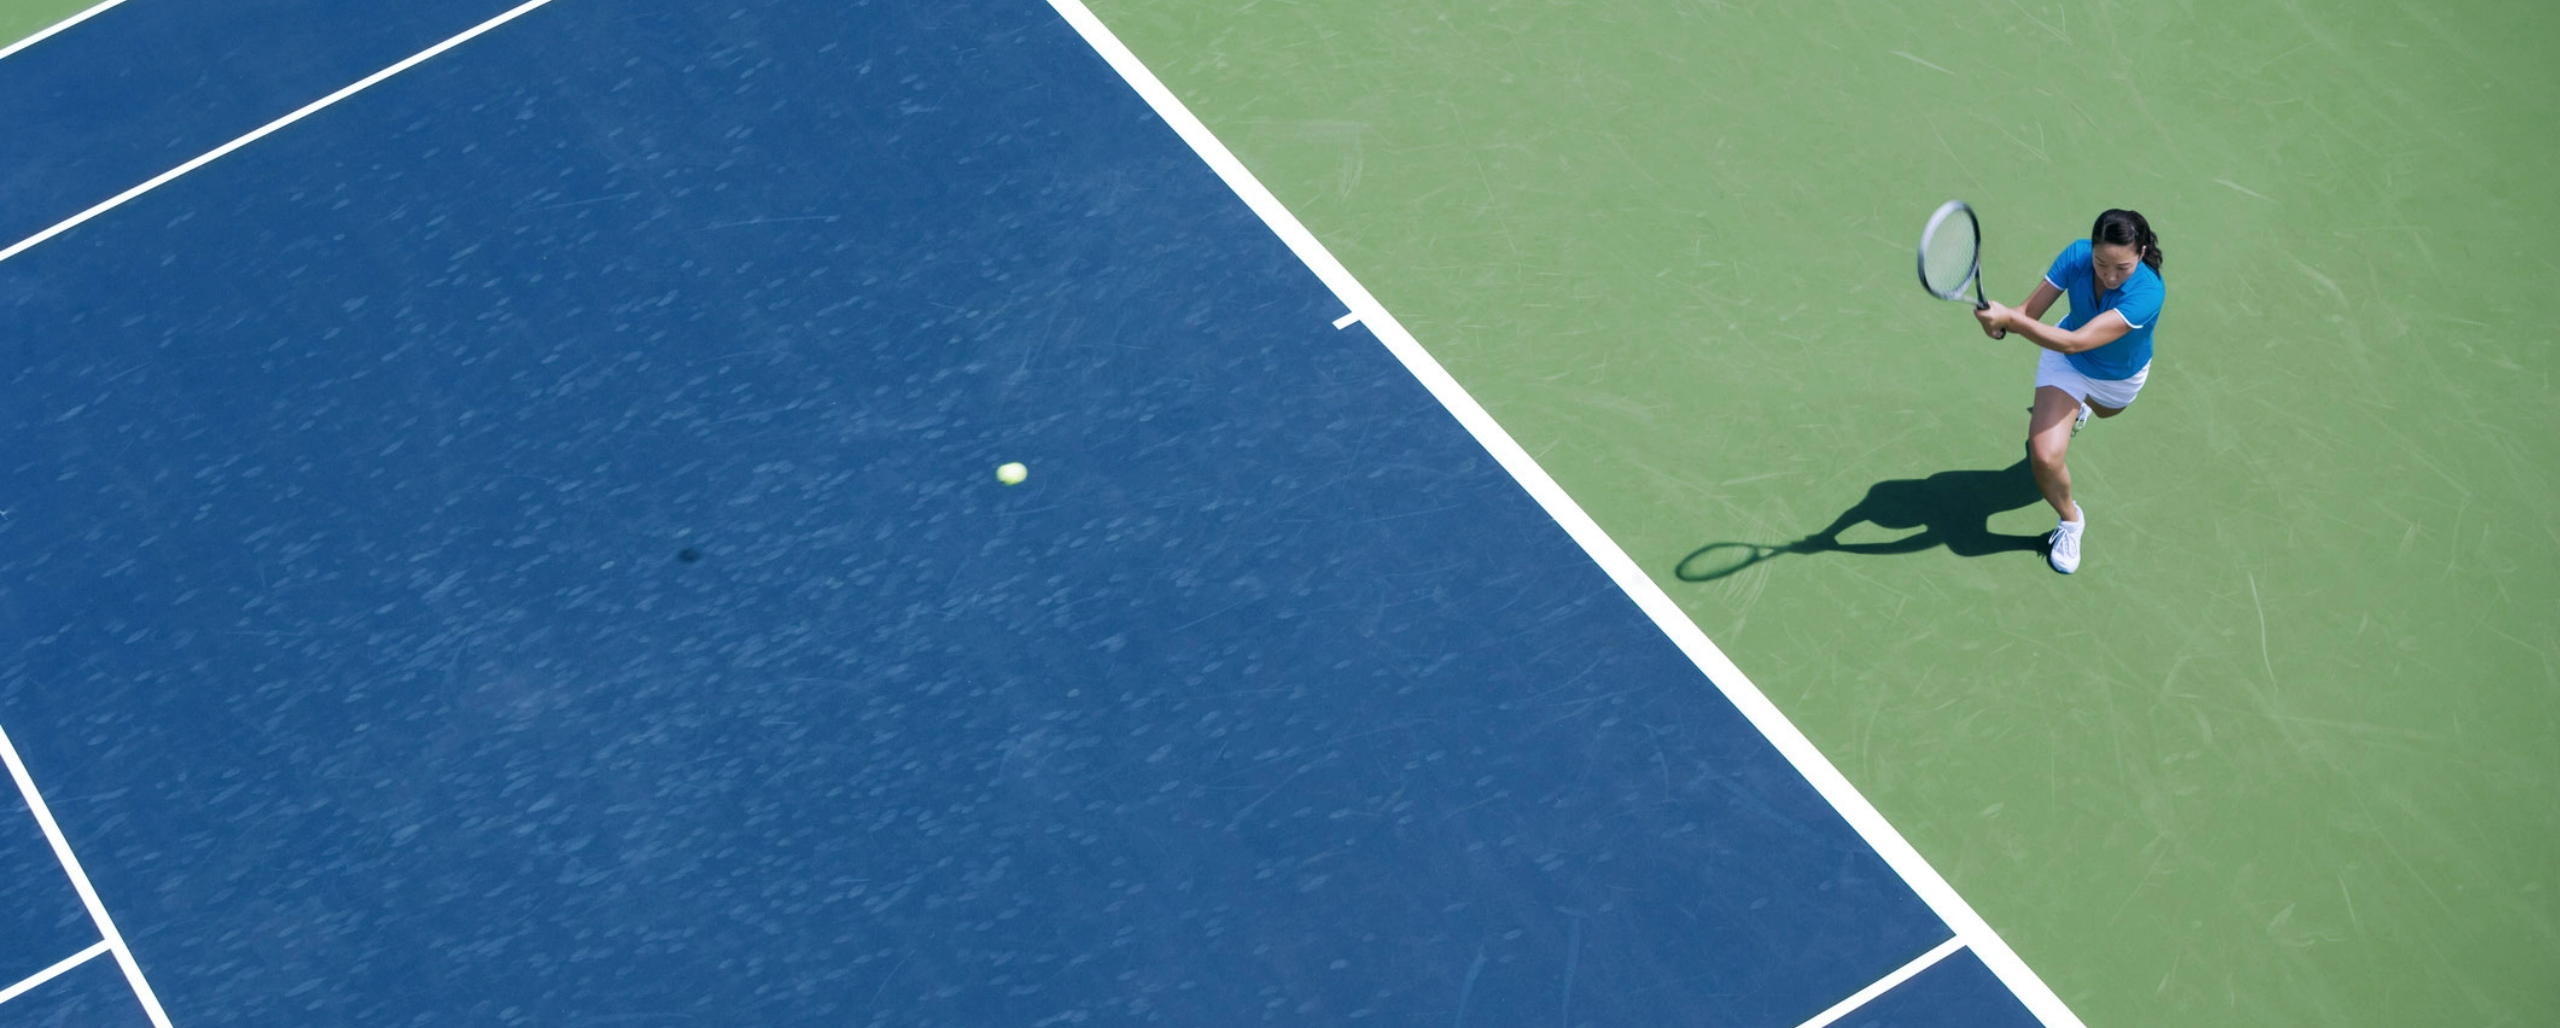 Imagem mulher jogando tenis